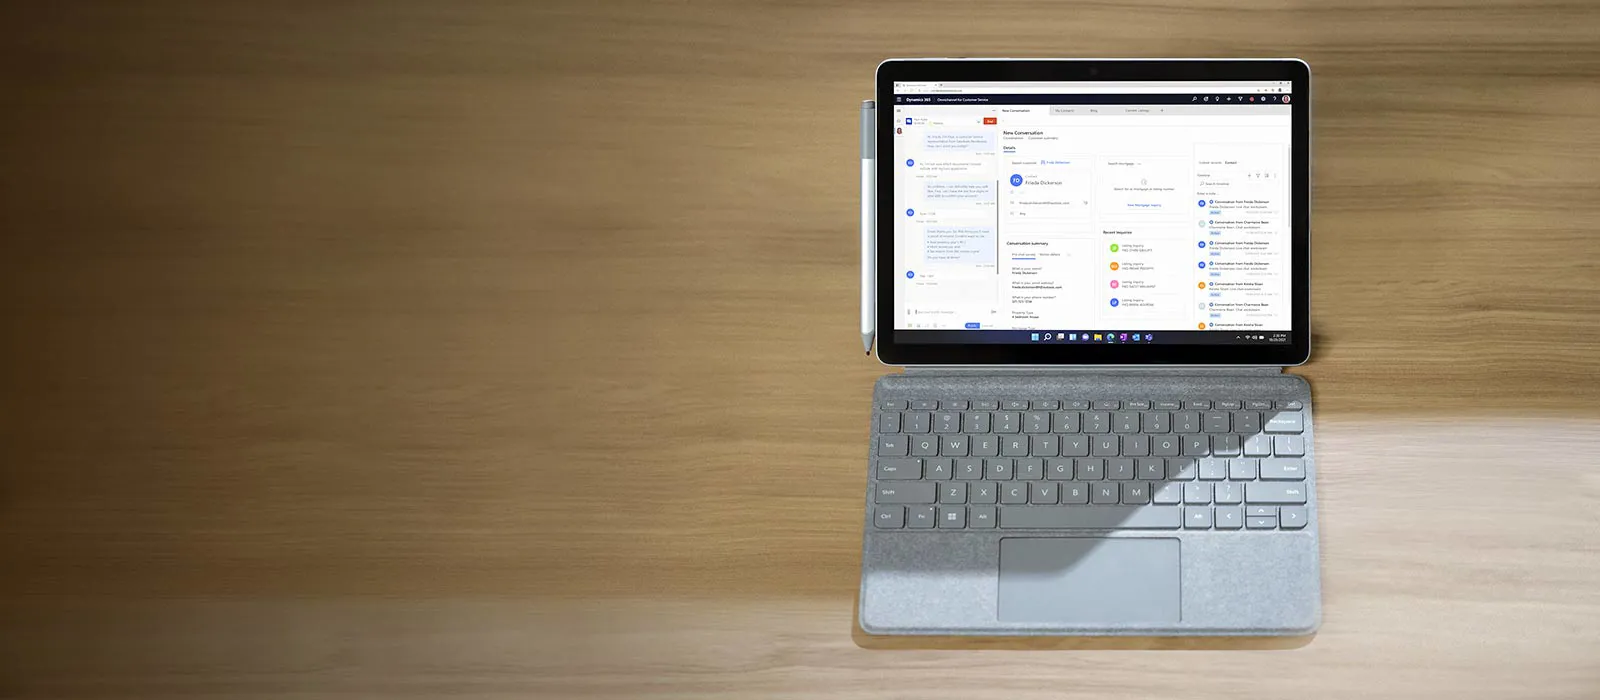 Ein Surface Go 4 steht im Laptop-Modus auf einer Unterlage aus Holz, auf dem Bildschirm des Surface ist die Anwendung Dynamics 365 geoeffnet